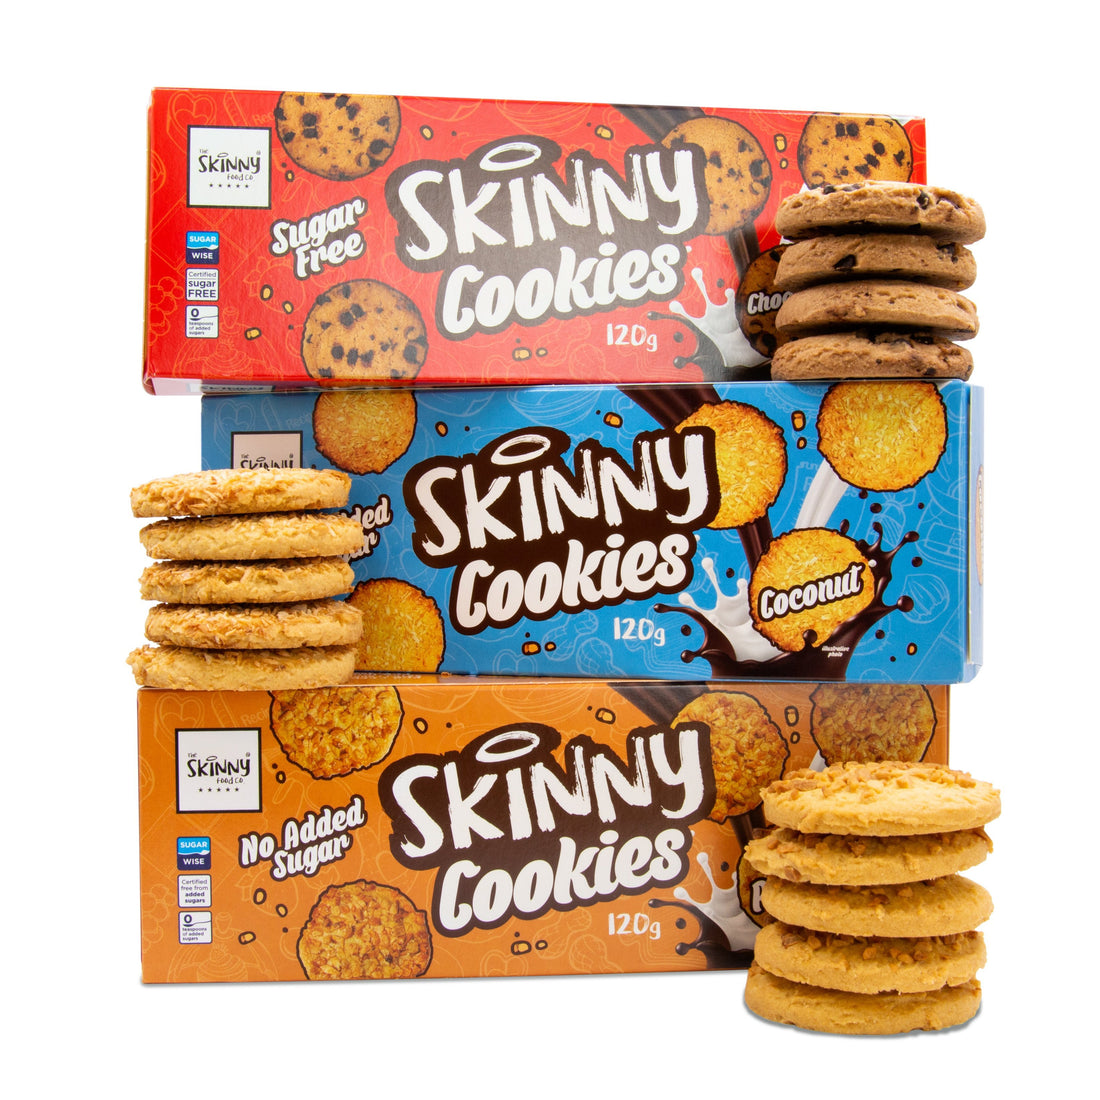 Τα ΝΕΑ μας Skinny μπισκότα με χαμηλή ζάχαρη μόλις έπεσαν! - theskinnyfoodco